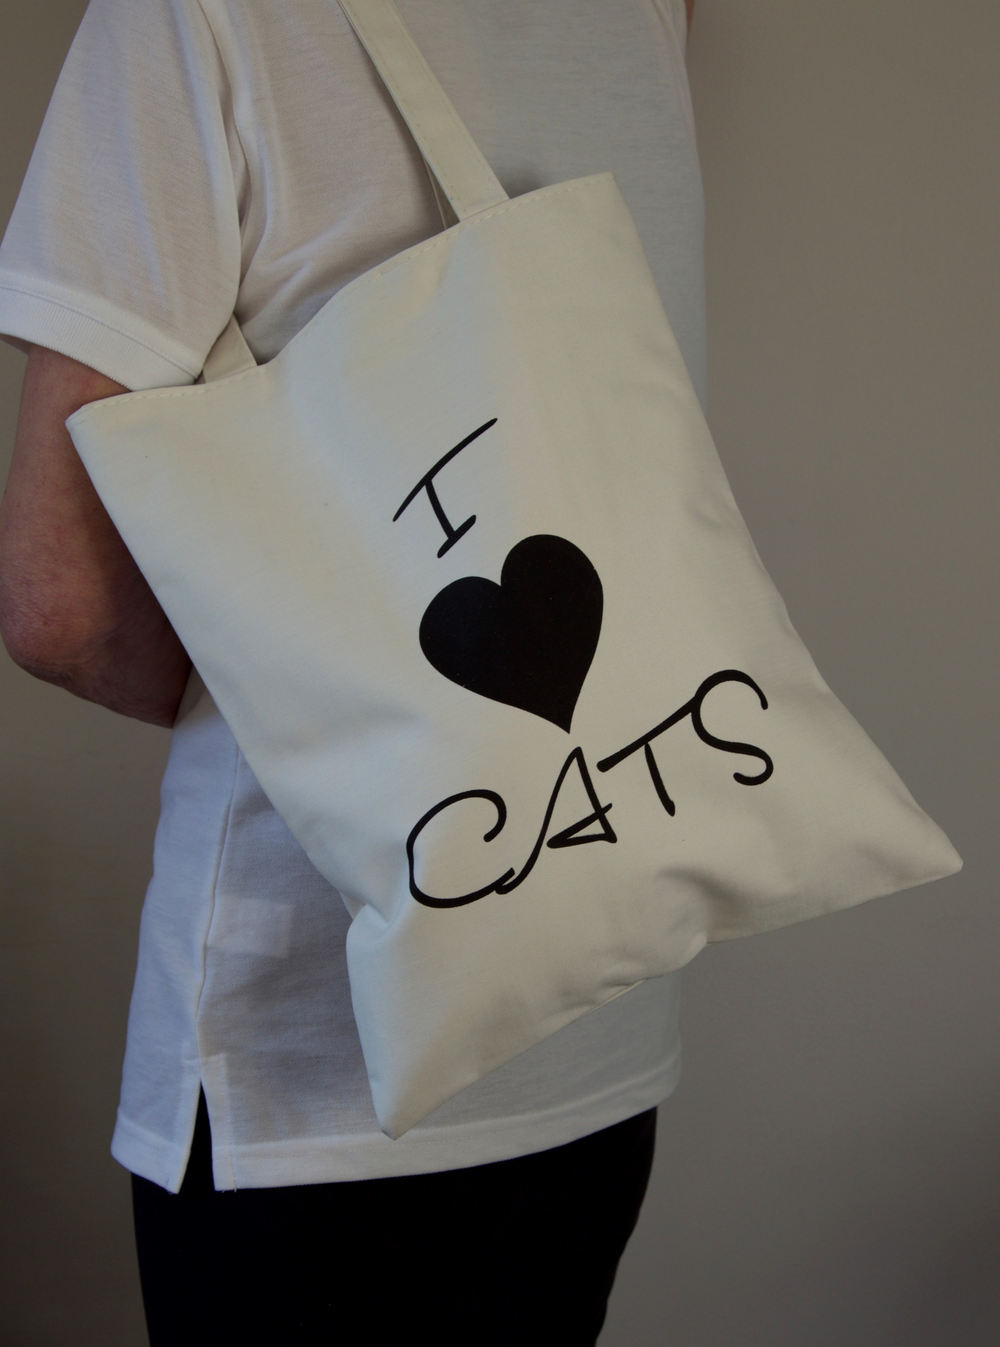 I Love Cats Tote Bag